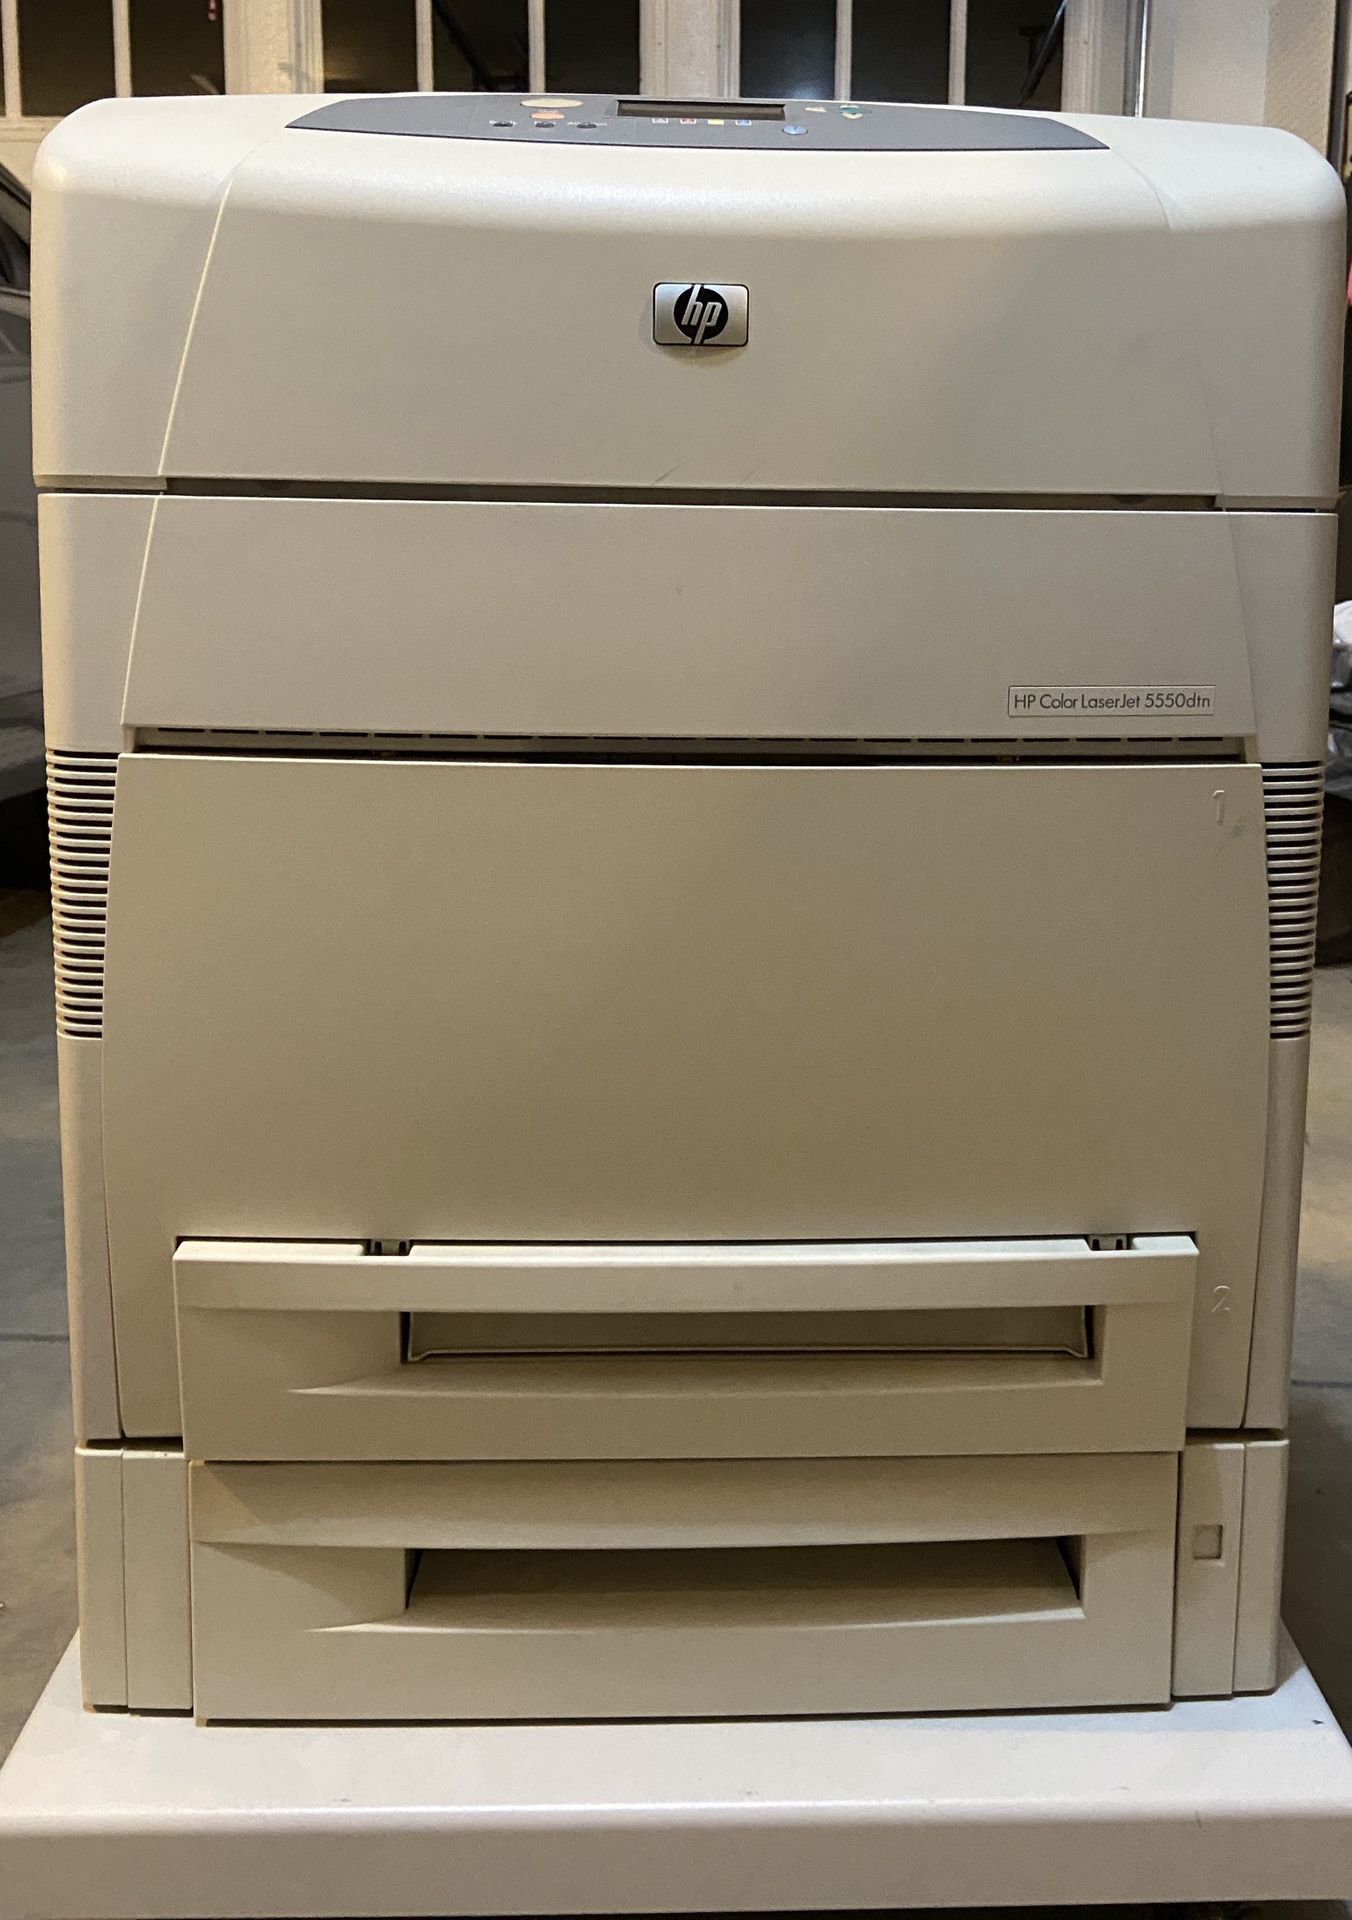 HP Color Laser Jet 5550dtn Printer